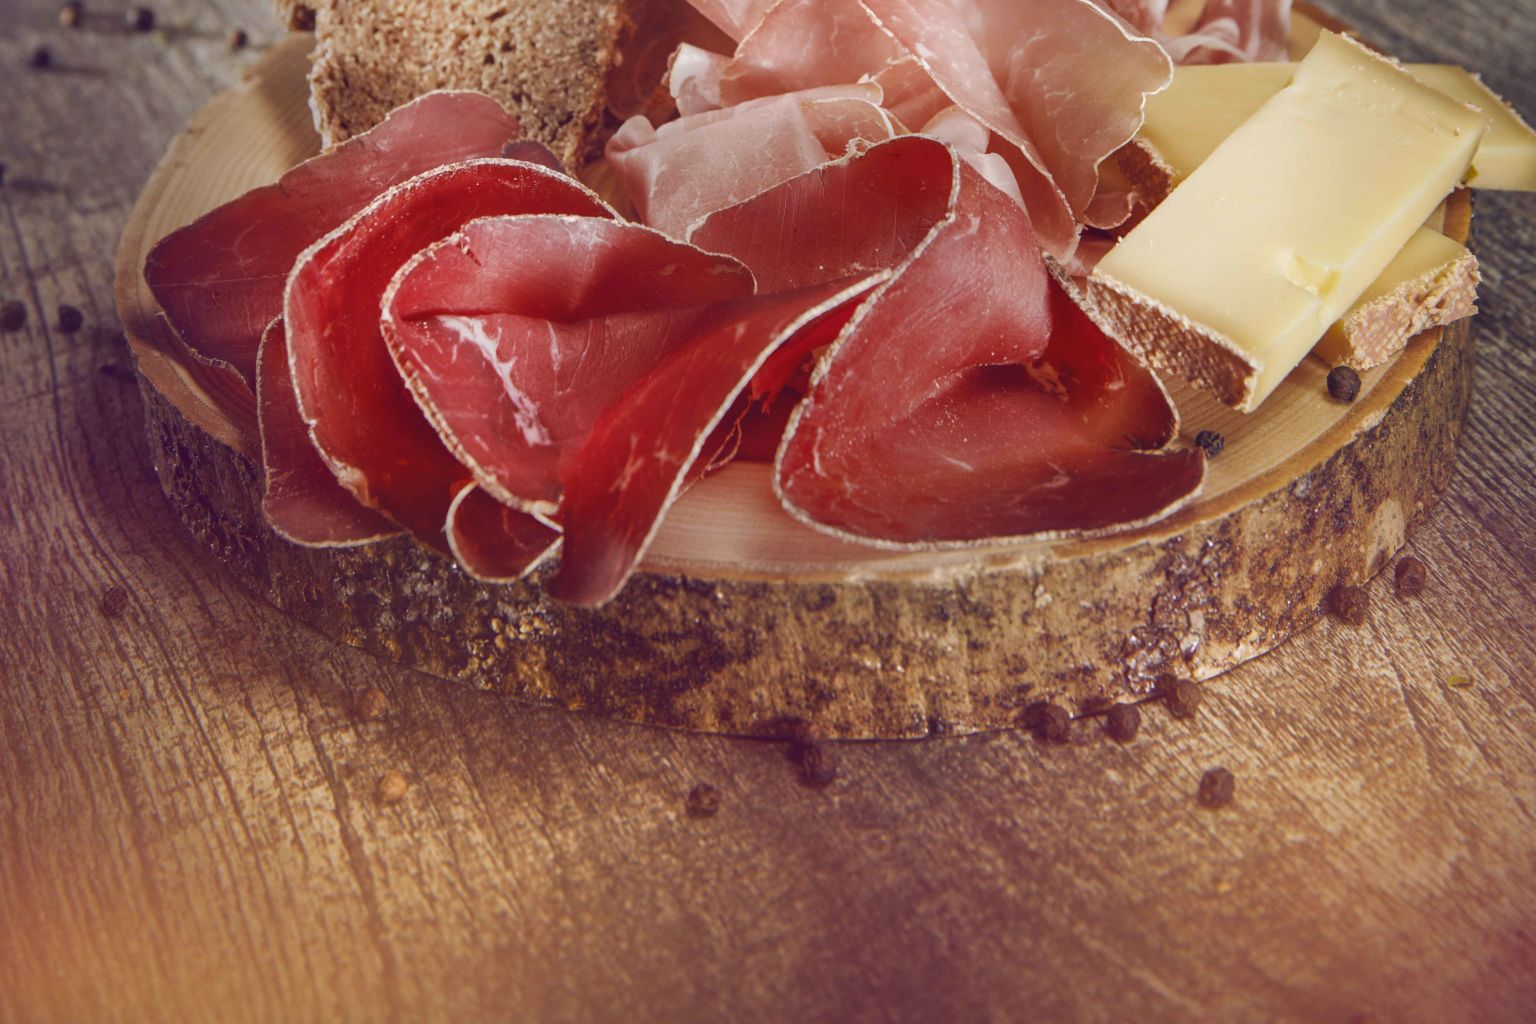 Walliser Teller aus Trockenfleisch, Rohschinken, trockenem Speck und Käse, Valais Wallis, Schweiz Suisse